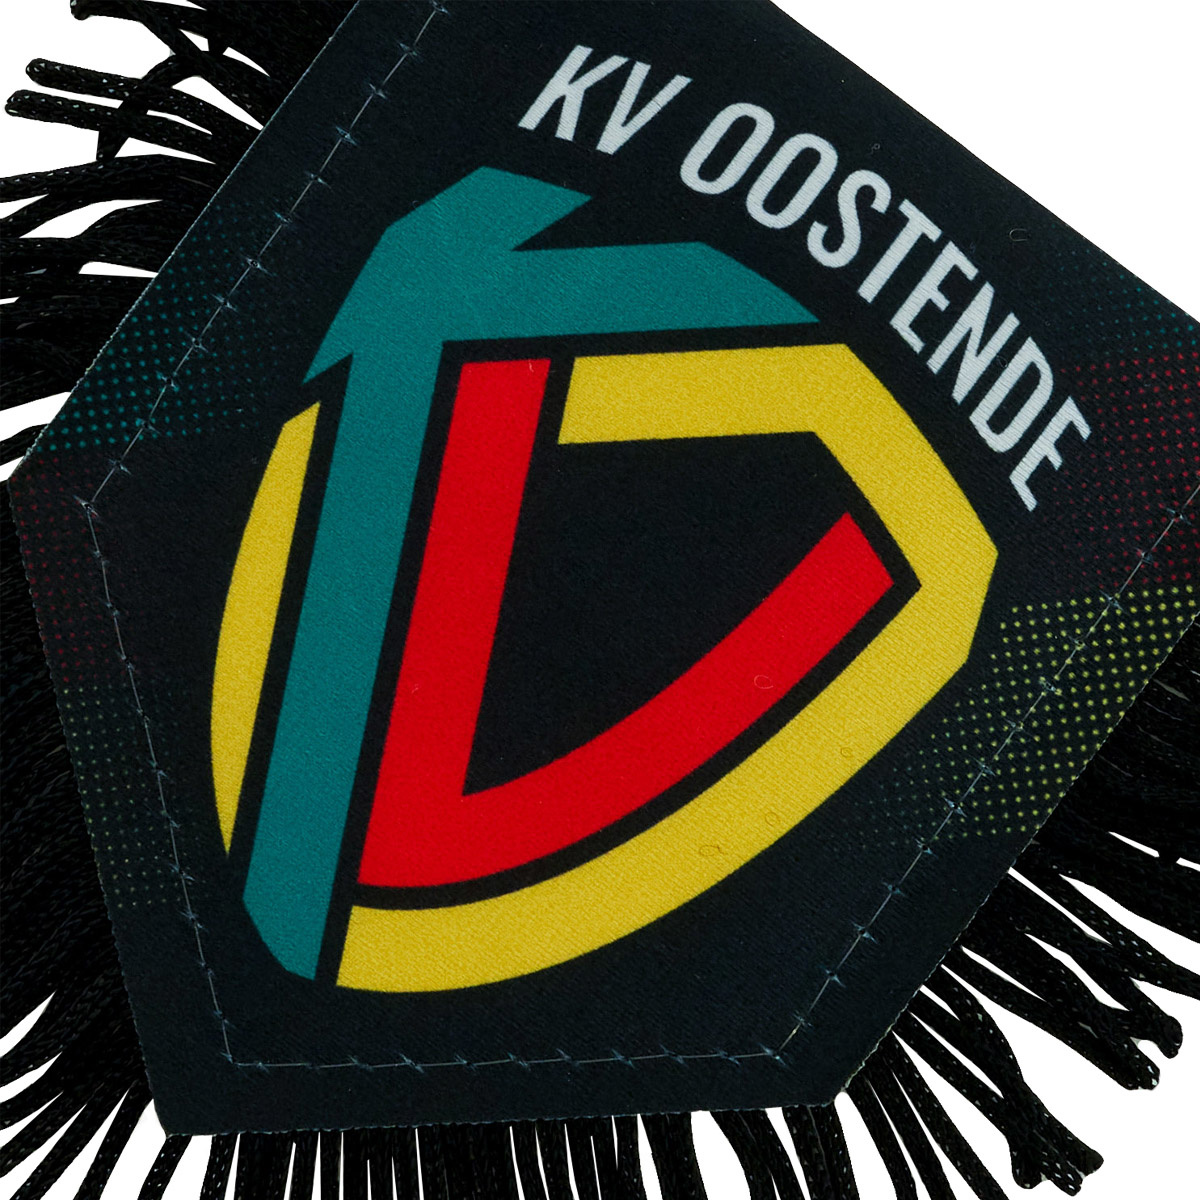 Achetez tous vos articles supporter du KV Ostende ici! 